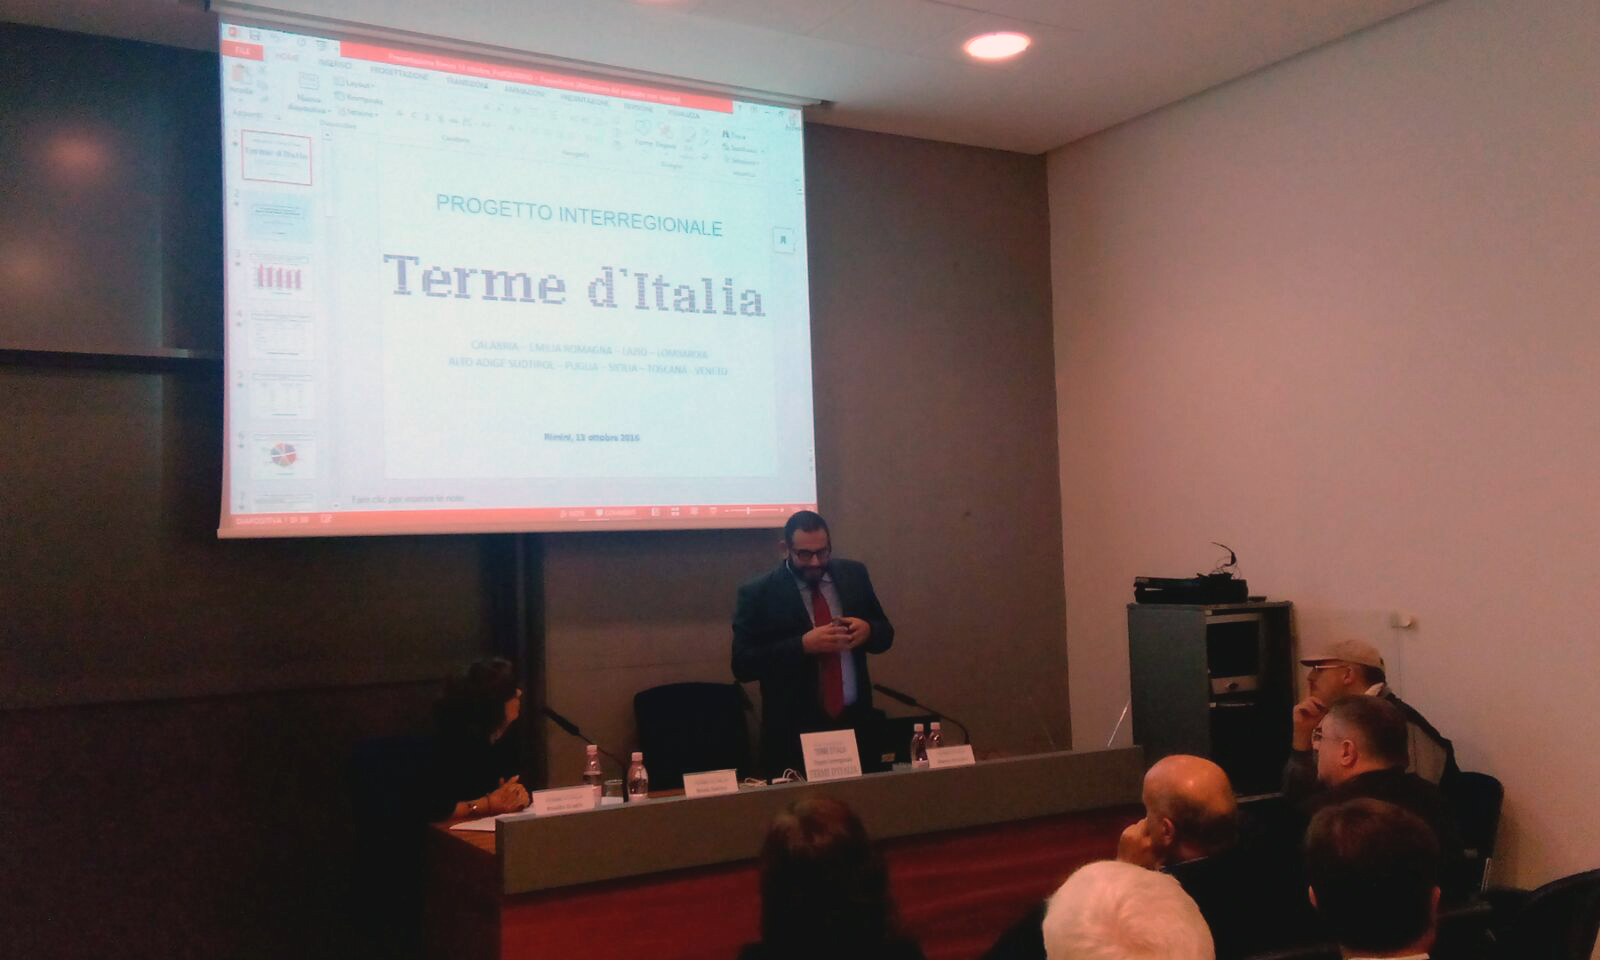 Il professor Nicola Quirino durante la sua presentazione a TTG Incontri 2016